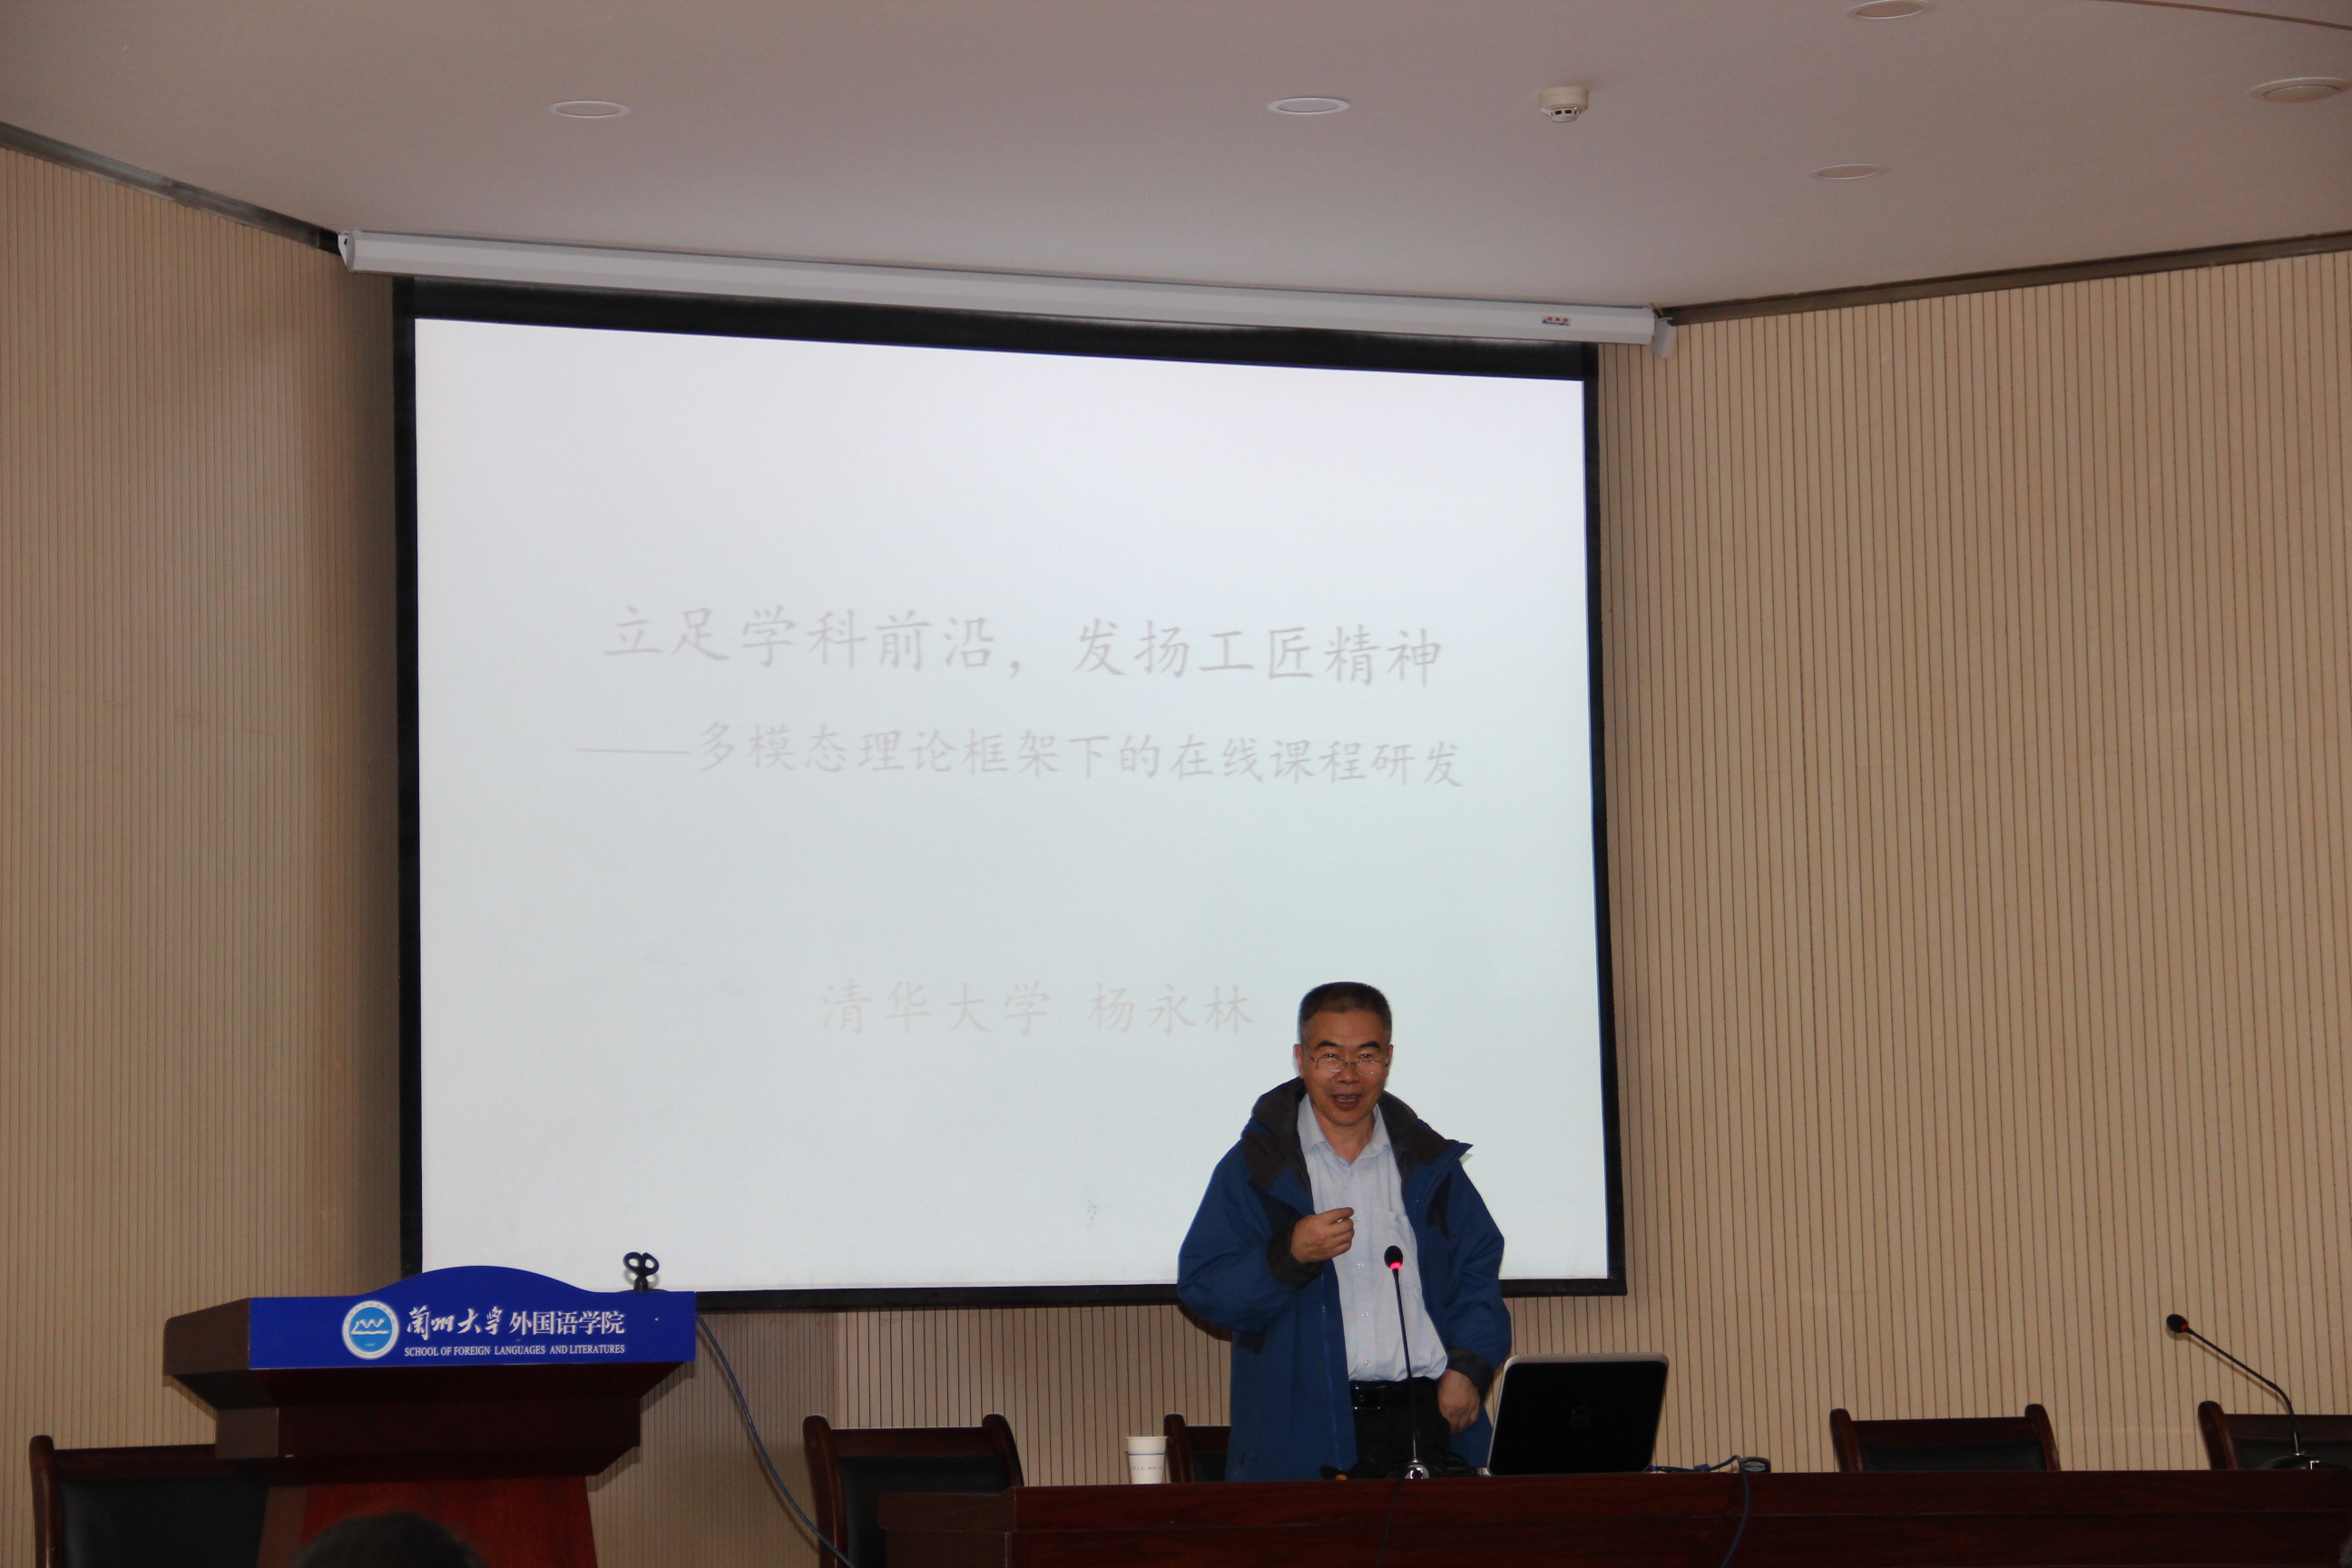 清华大学杨永林教授应邀来我校进行学术交流